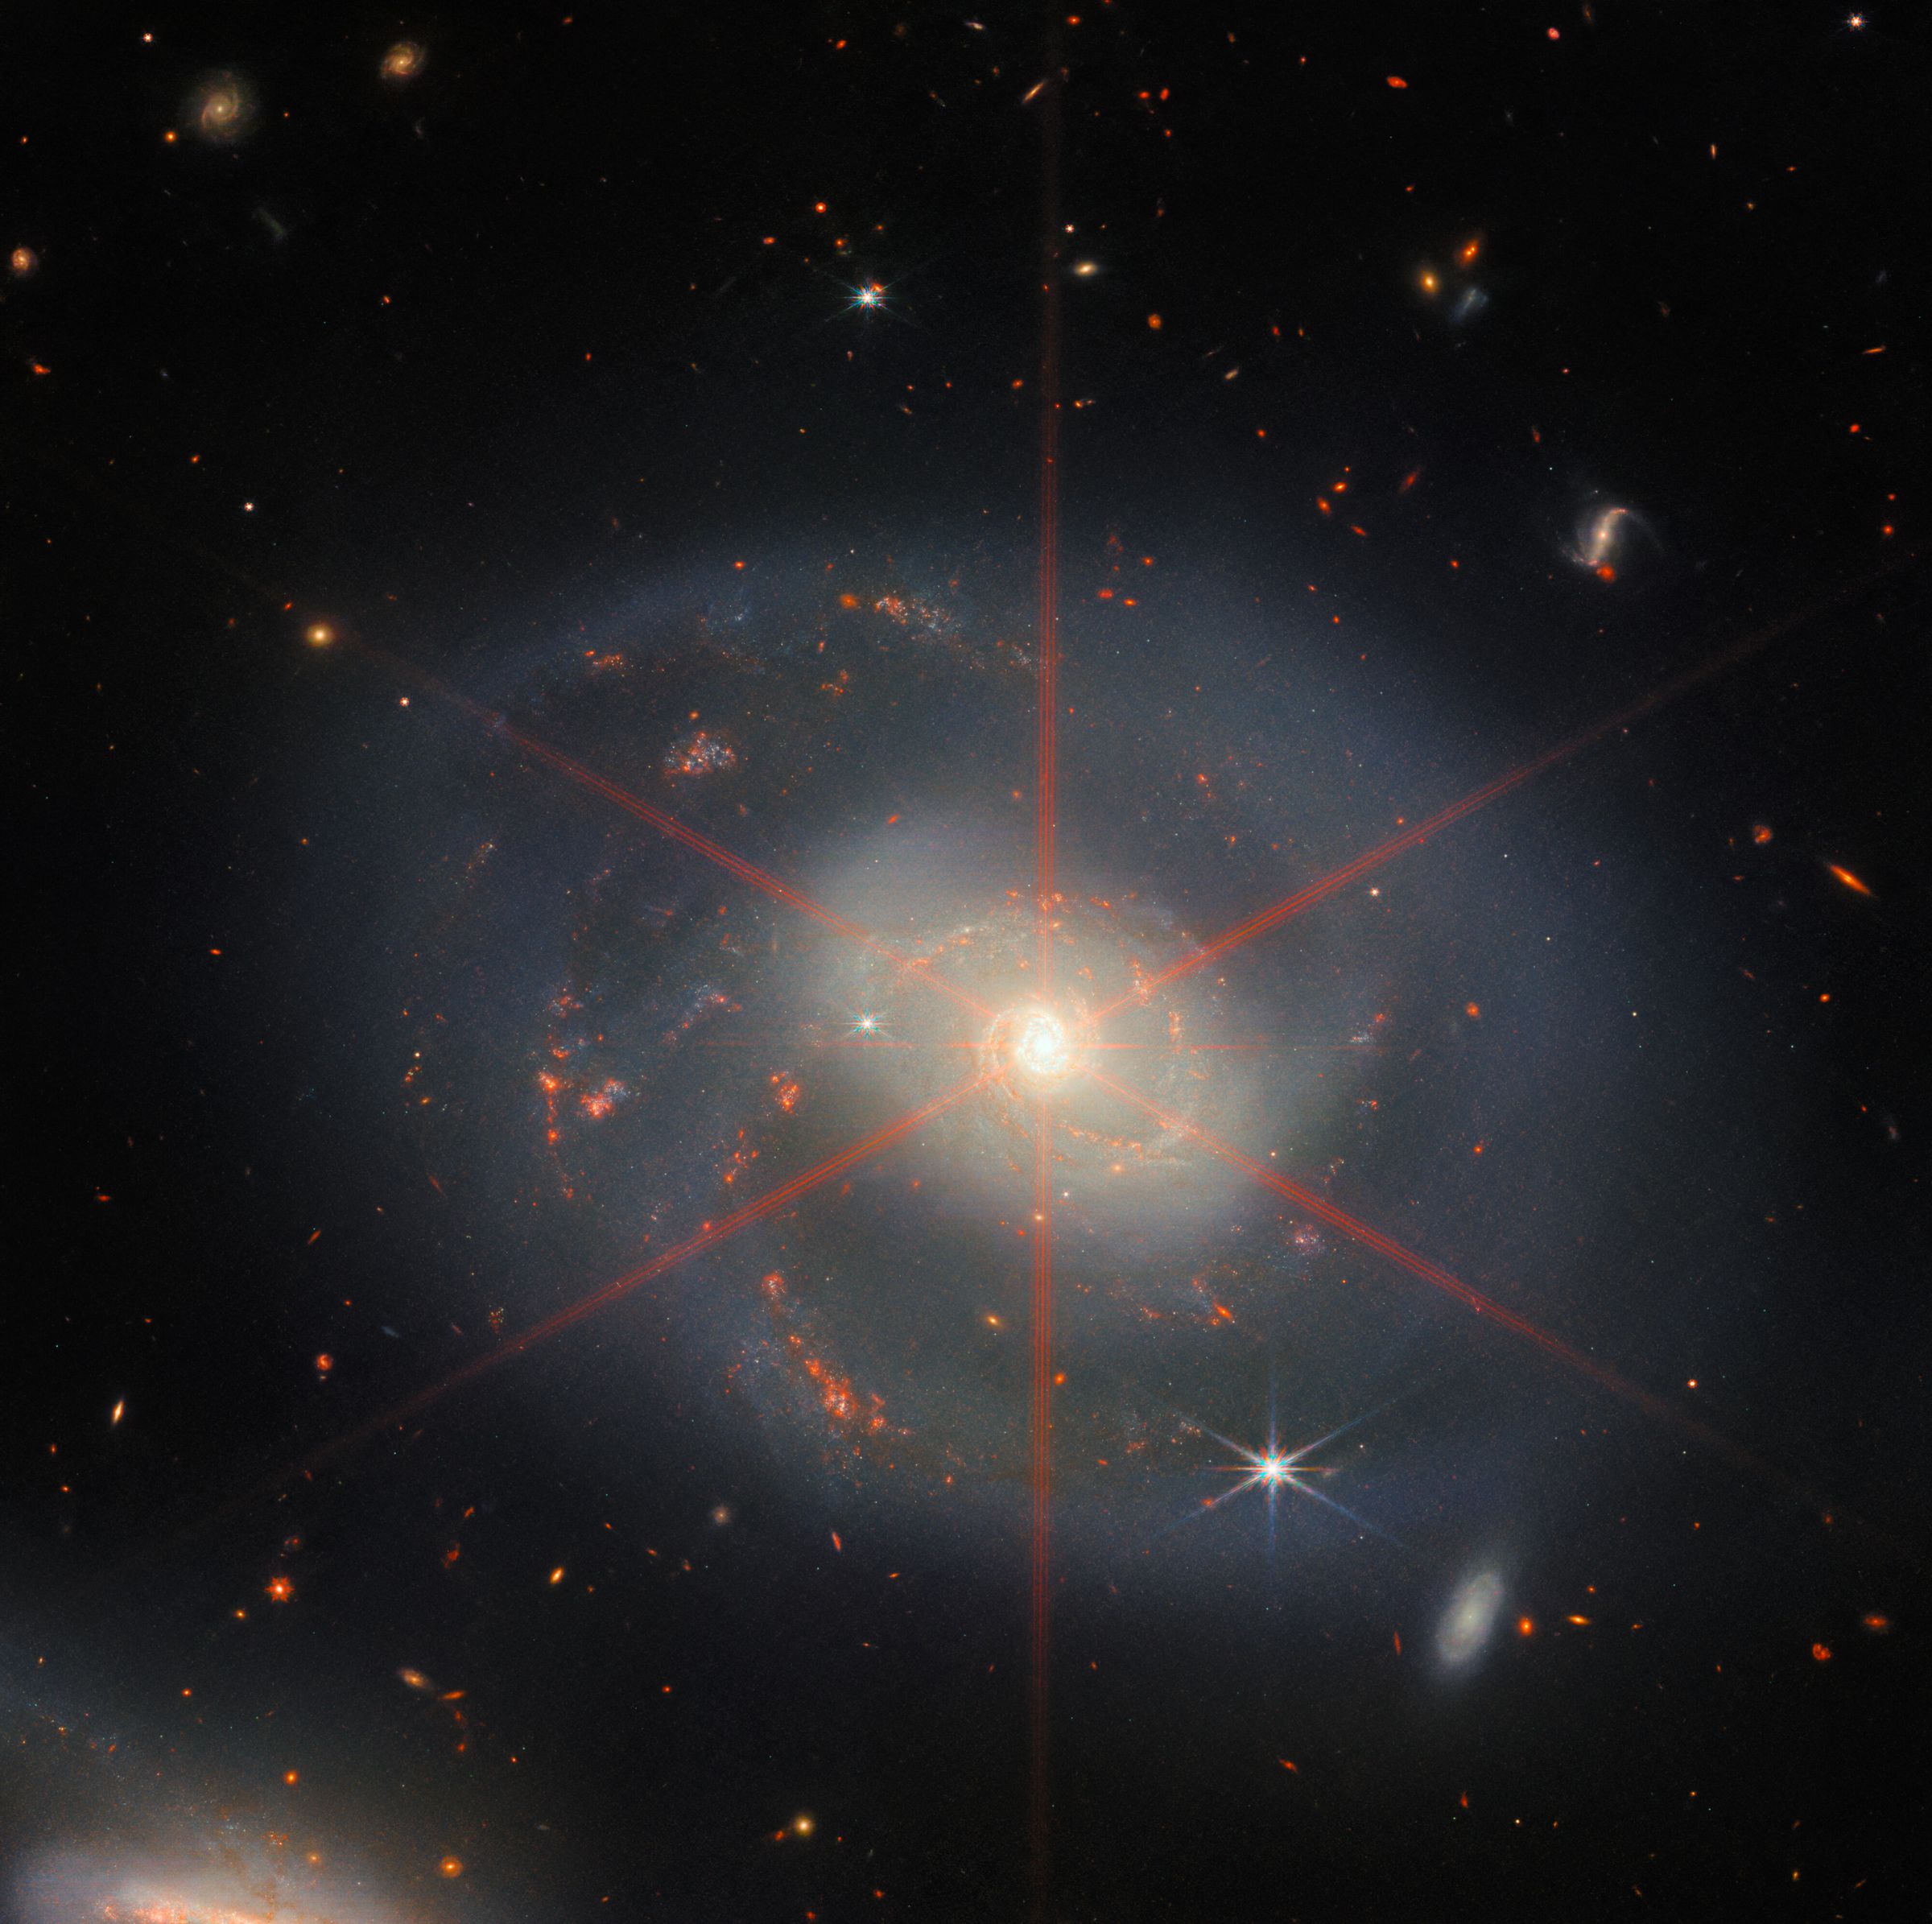 Questa immagine mostra una galassia a spirale dominata da una regione centrale luminosa.  La galassia ha sfumature blu-viola con regioni rosso-arancio piene di stelle.  Si può anche vedere un grande picco di diffrazione, che appare come uno schema stellare sopra la regione centrale della galassia.  Molte stelle e galassie riempiono lo scenario di sfondo